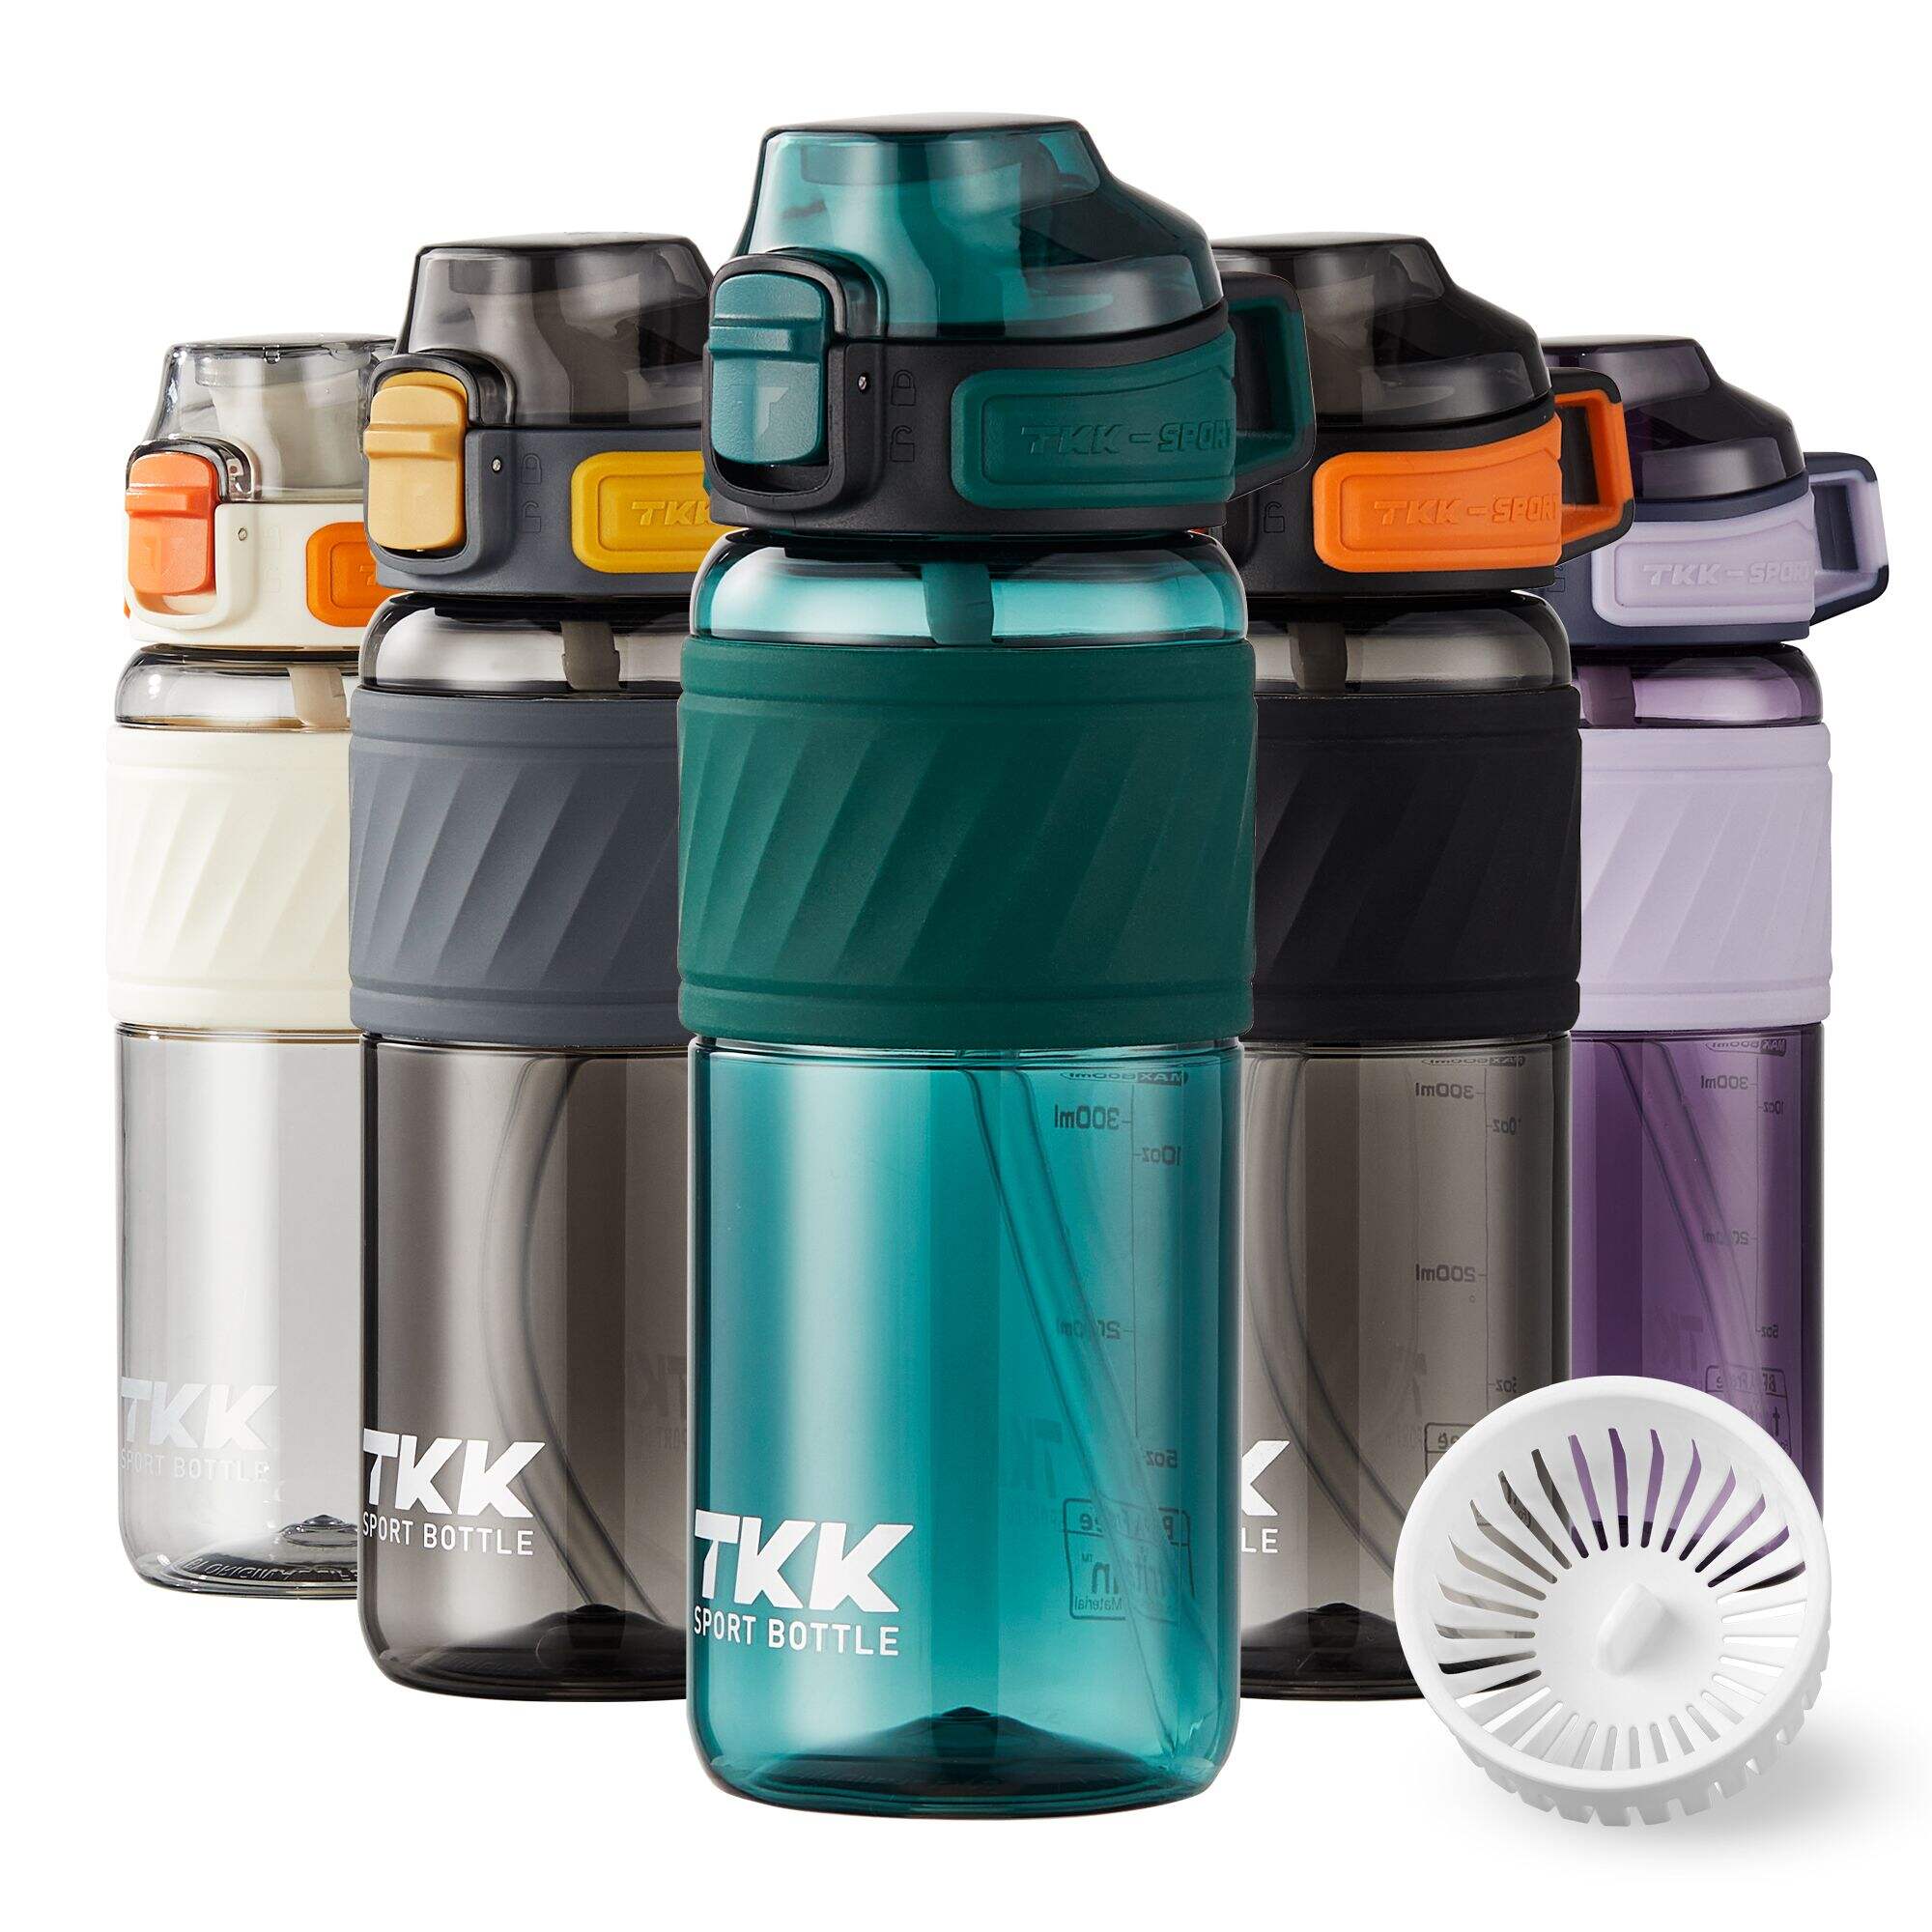 زجاجة مياه بلاستيكية TKK سعة 16 أونصة/20 أونصة مع قش للأطفال، زجاجة مياه للمدرسة، آمنة للاستخدام في غسالة الأطباق، خالية من مادة BPA، تريتان مانعة للتسرب، رياضية في الهواء الطلق، غطاء مفتوح قابل للقفل